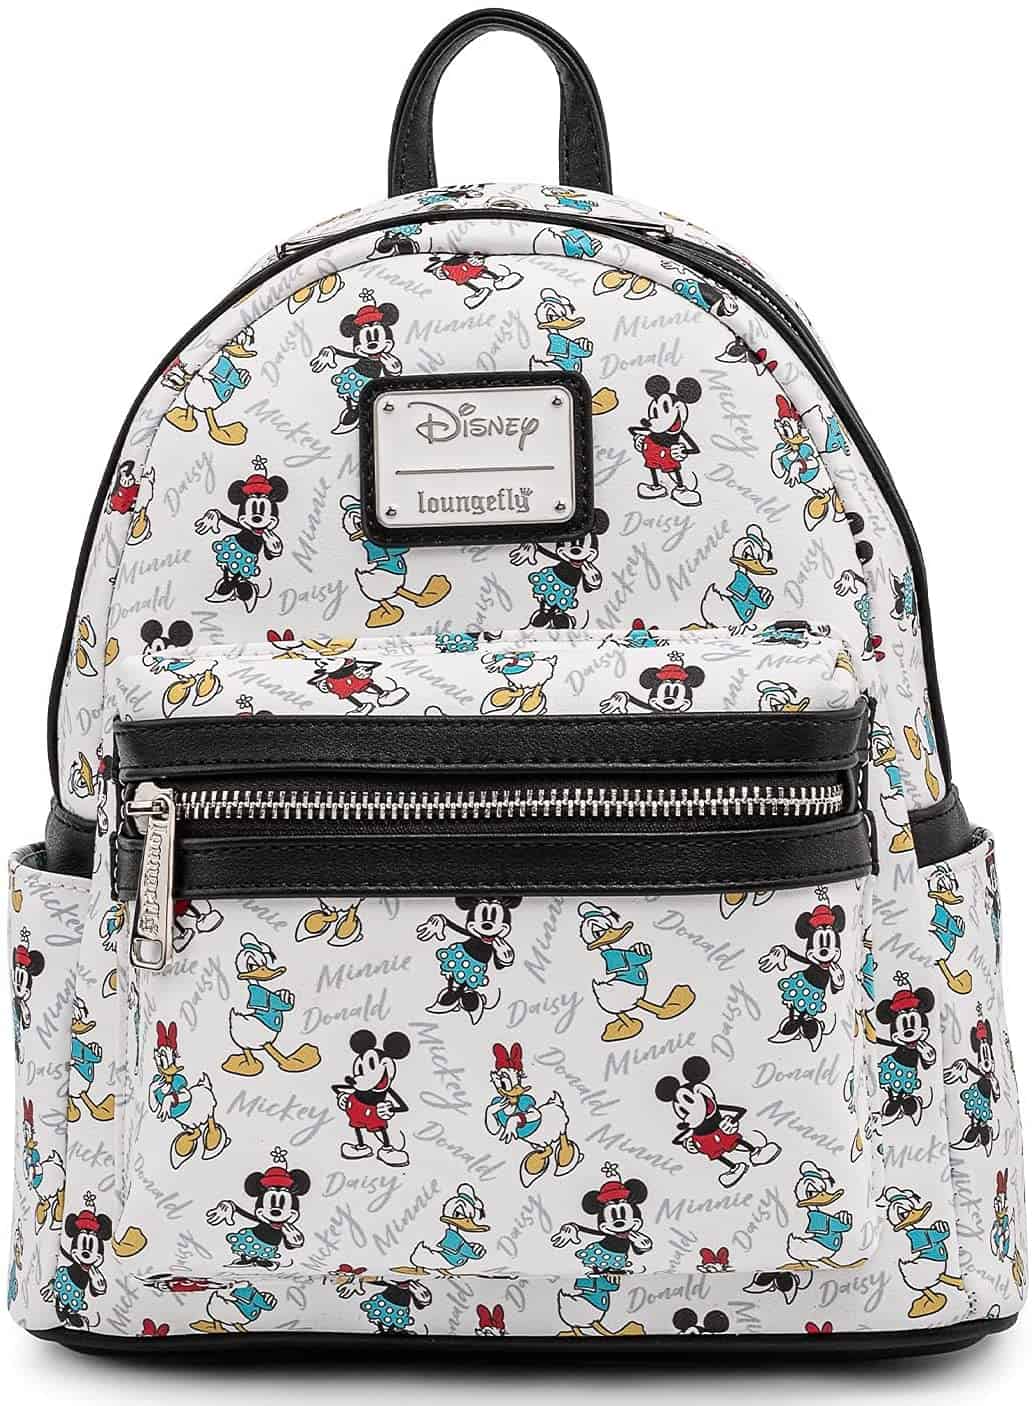 loungefly disney mickey Minnie Mouse Donald Daisy Mini Backpack Handbag White